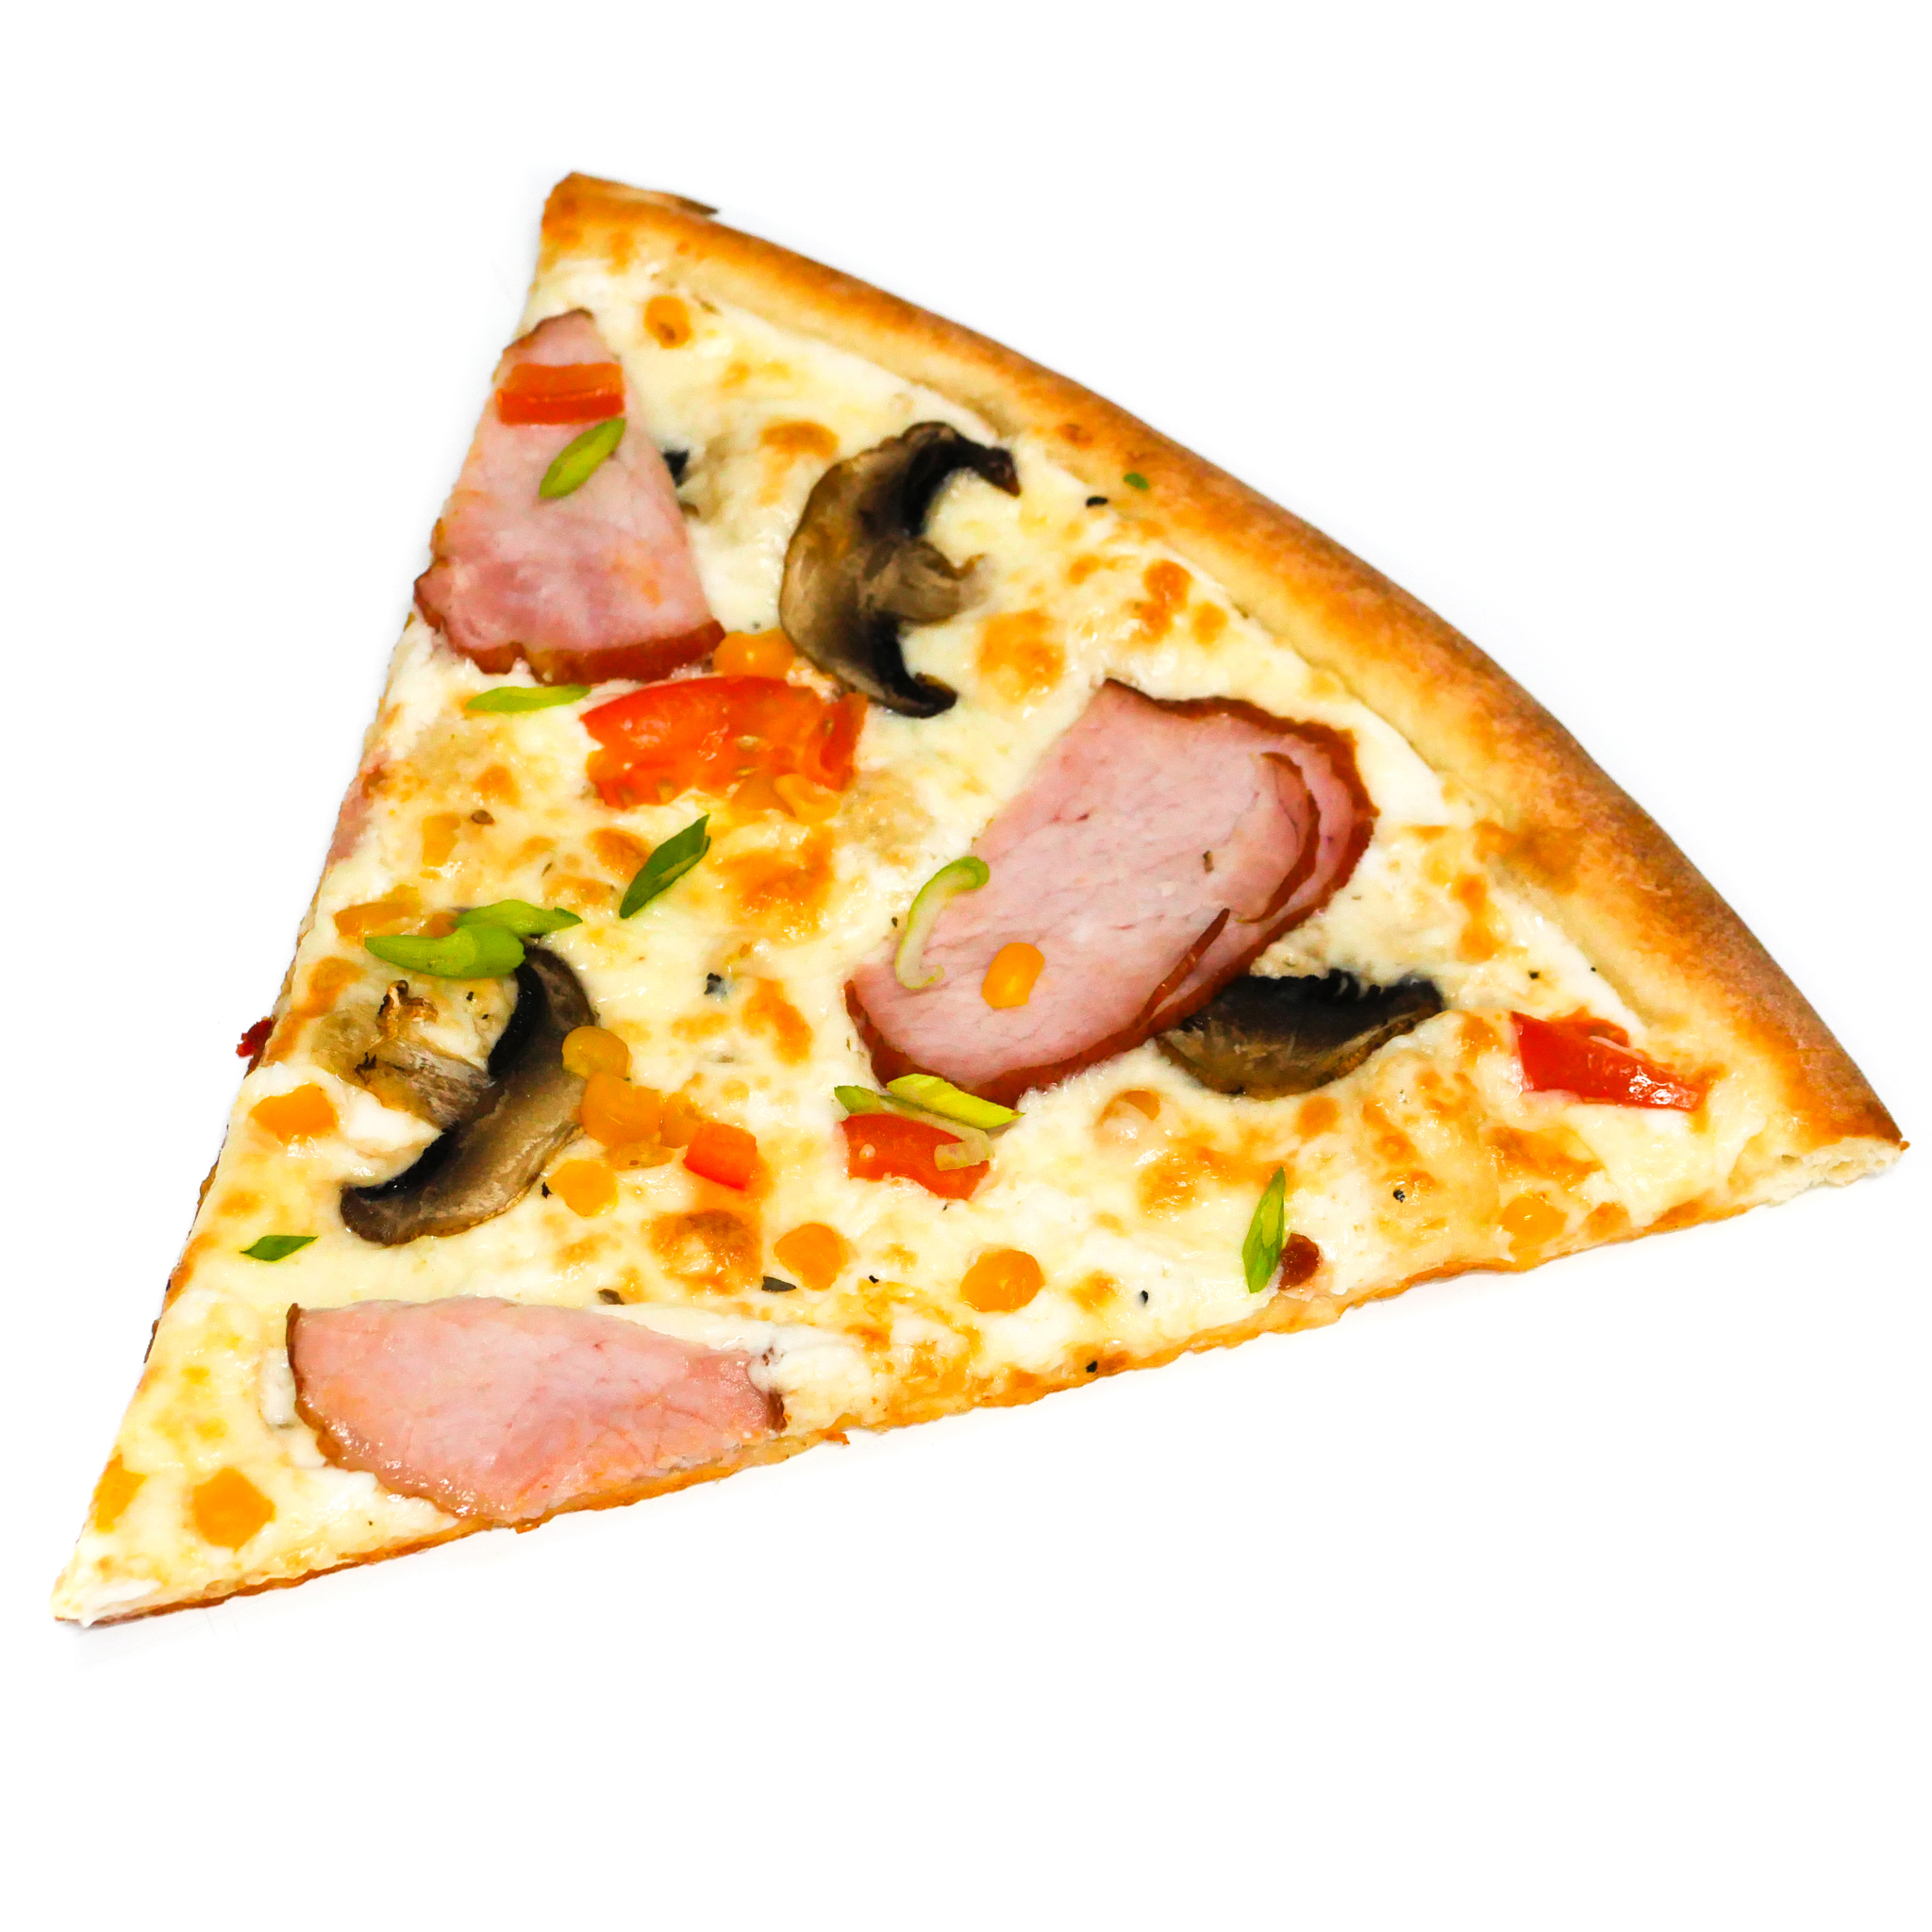 сколько калорий в одном куске пиццы гавайская фото 15